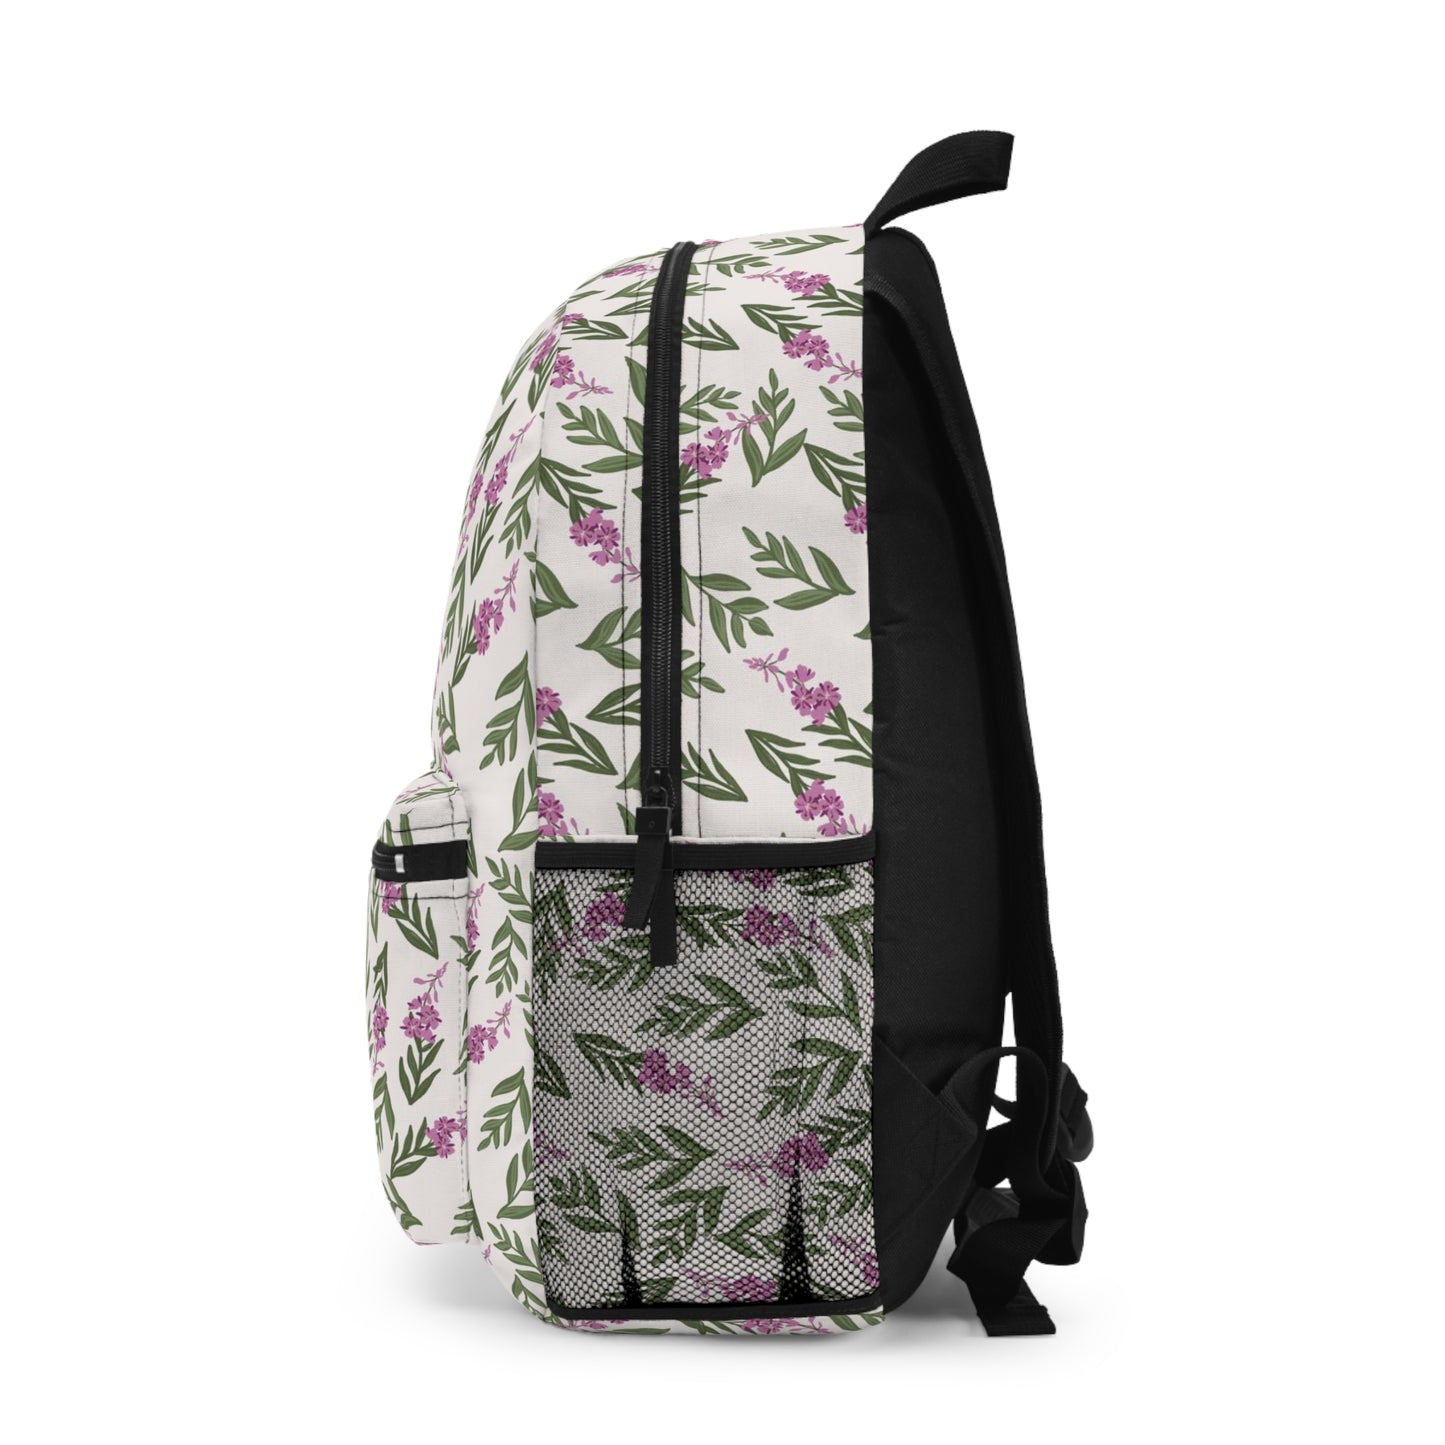 Fireweed Backpack